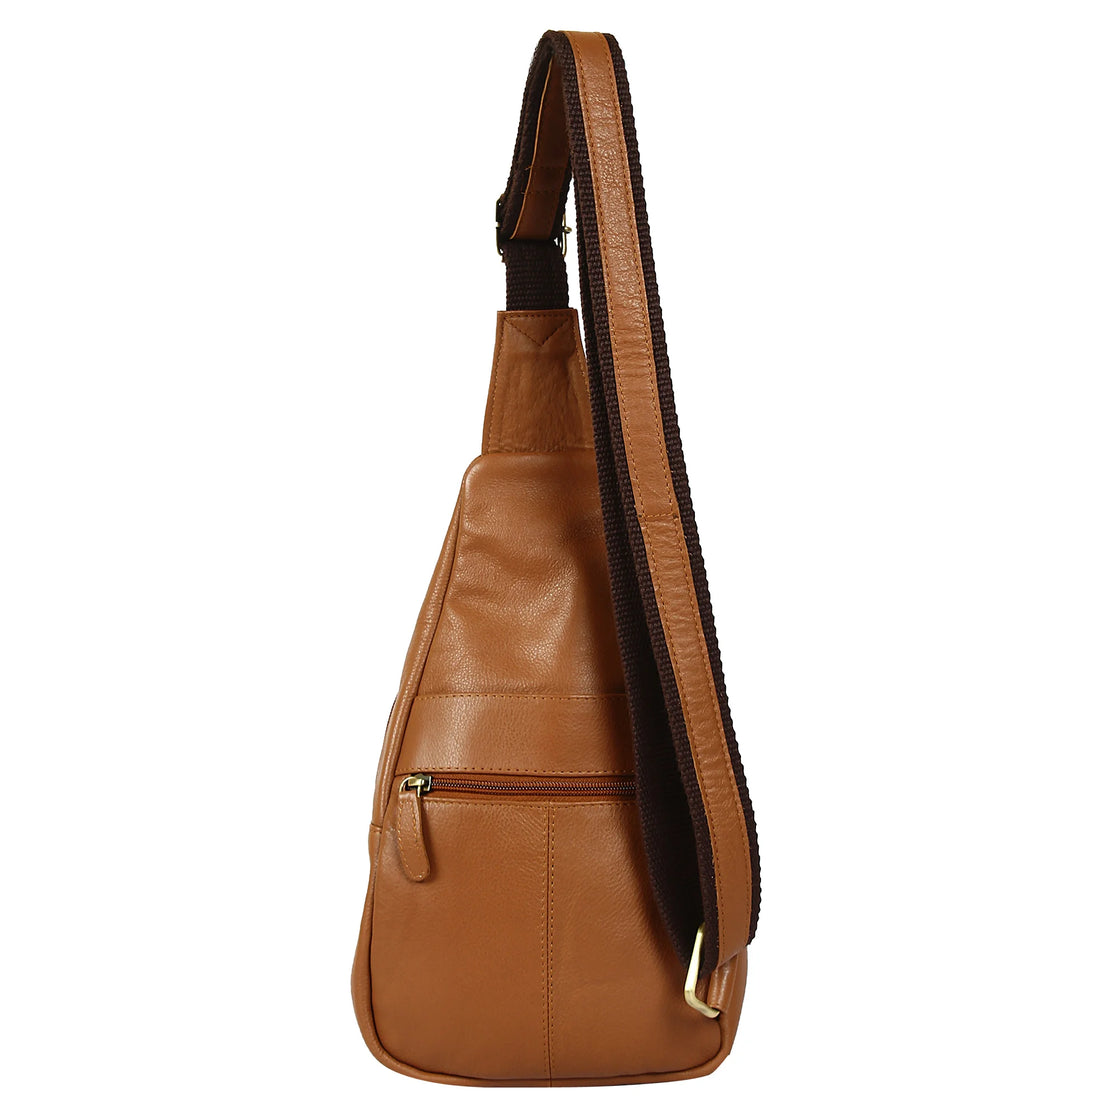 Leather Sling Bag, Ladies Leather Bag, Shoulder Bag, Cross Body